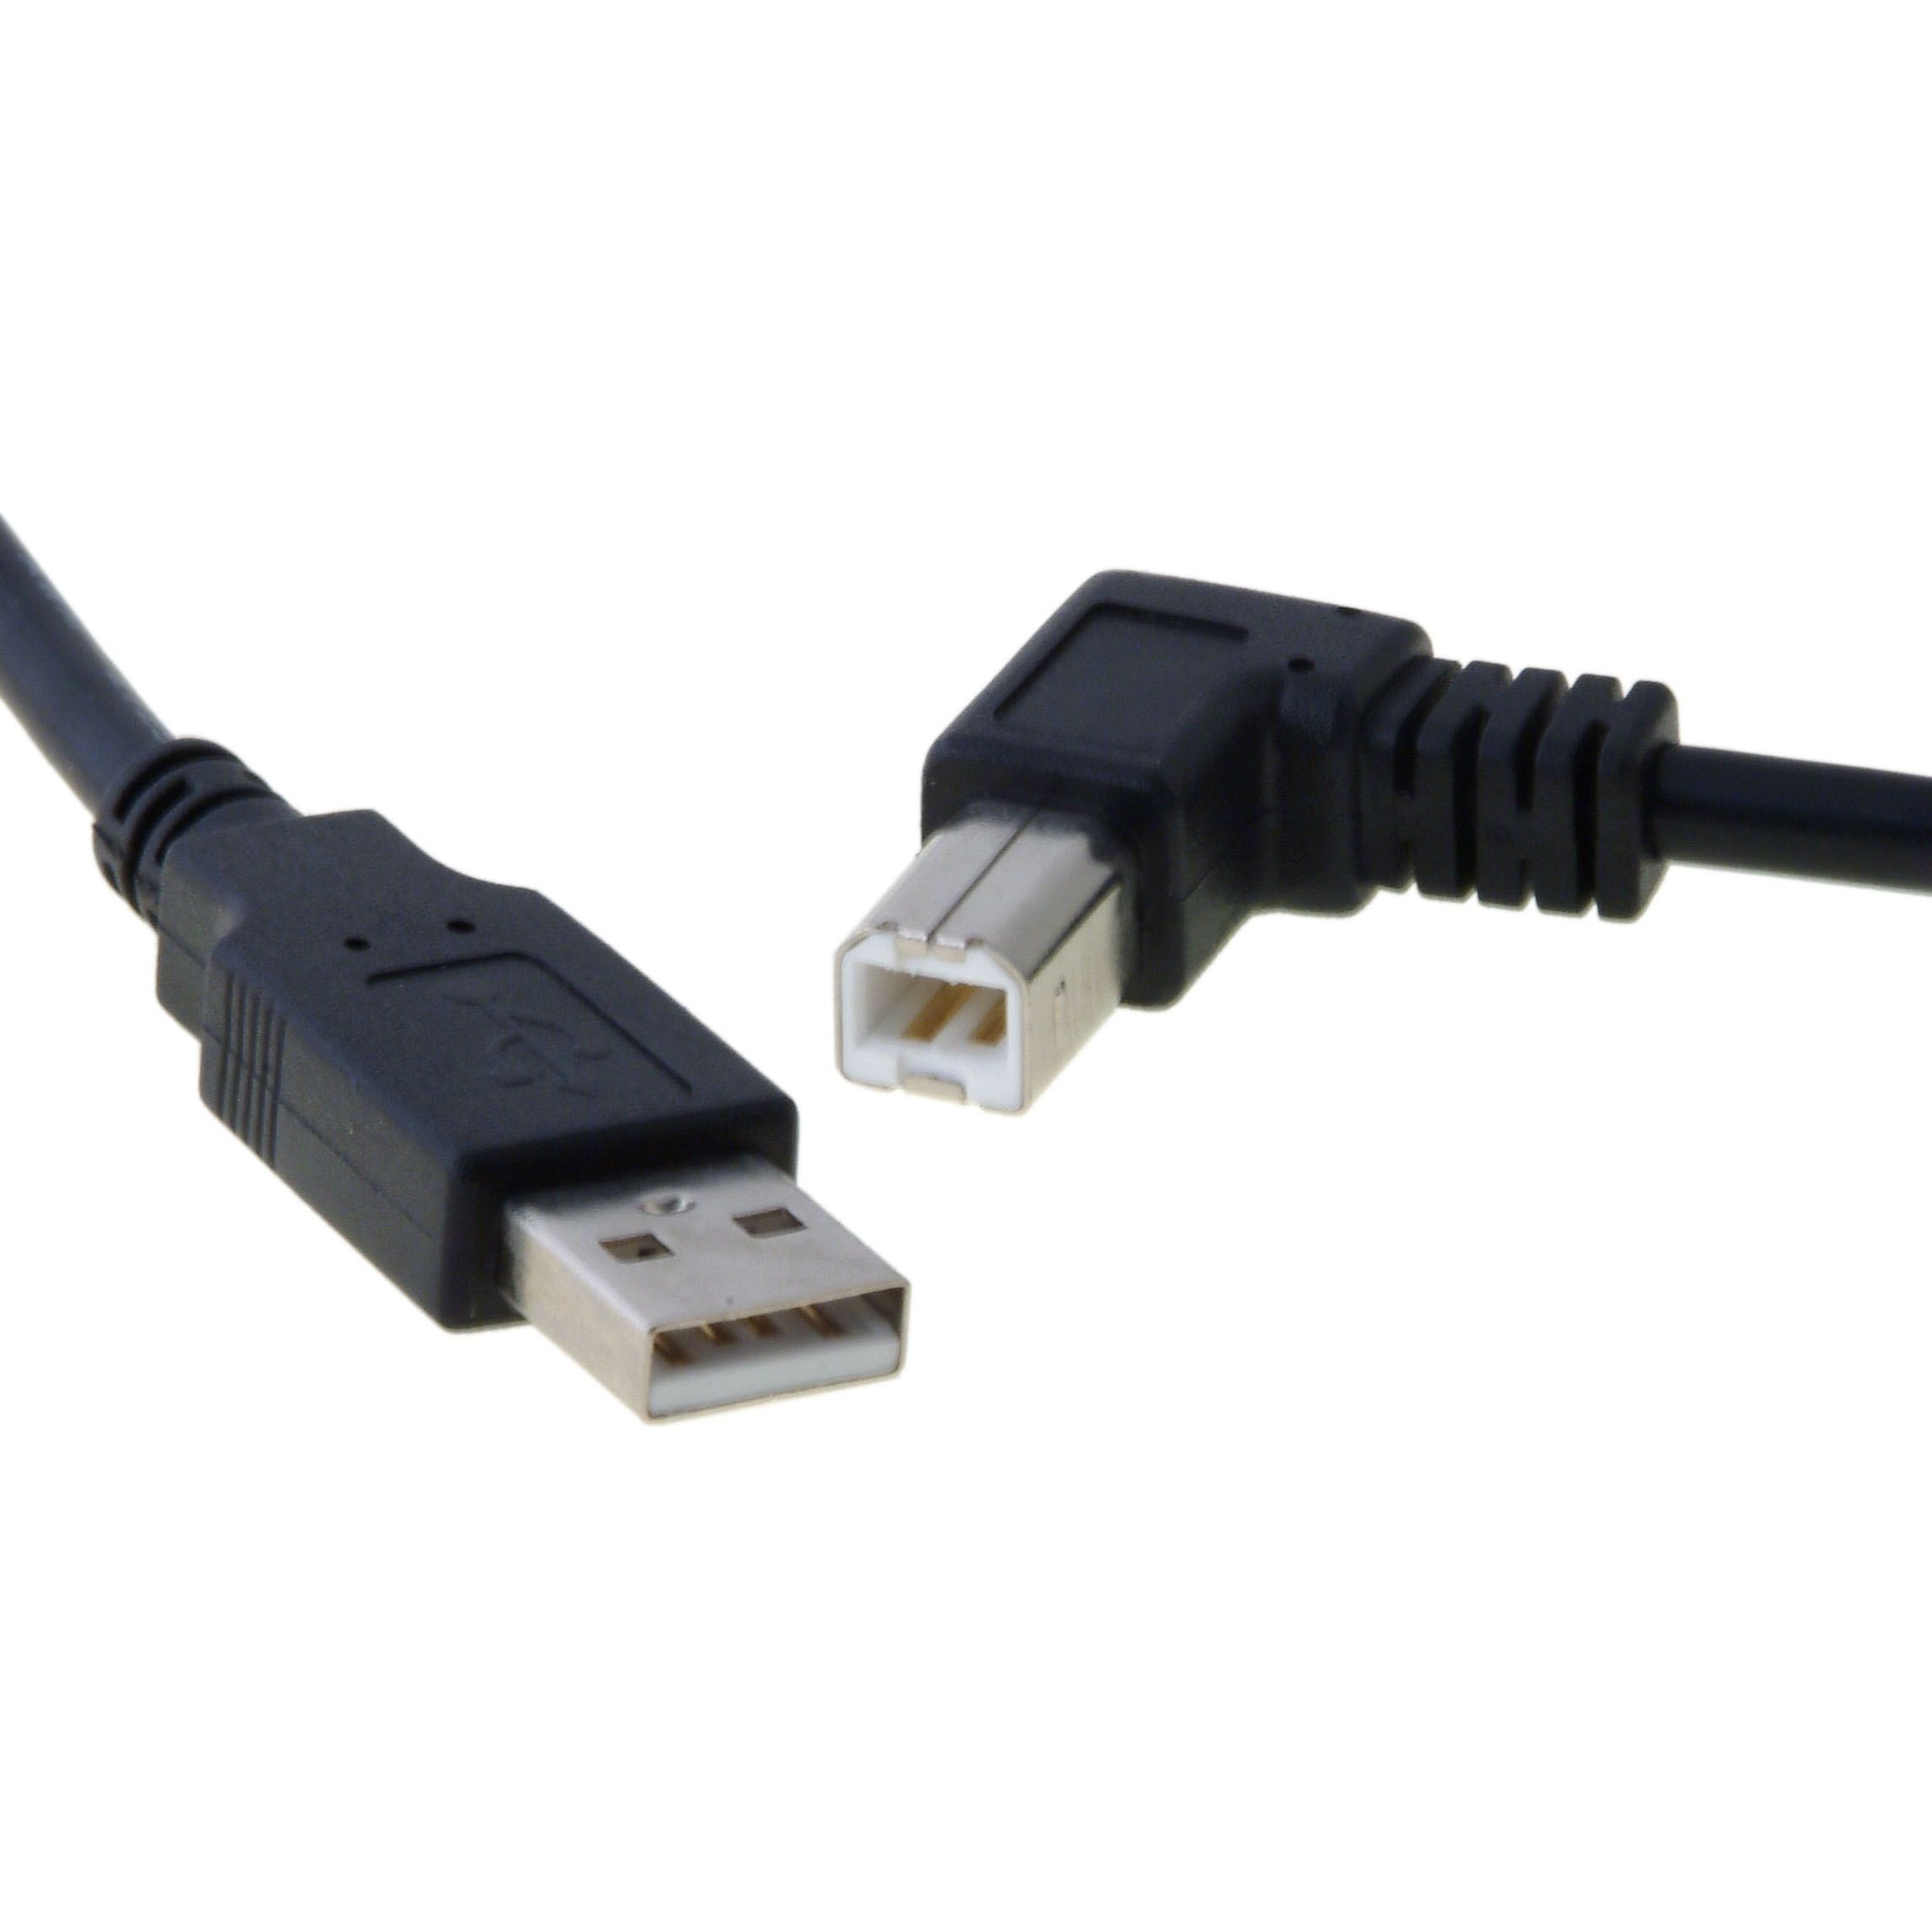 USB 2.0 cable plug B 90° angled LEFT 1m